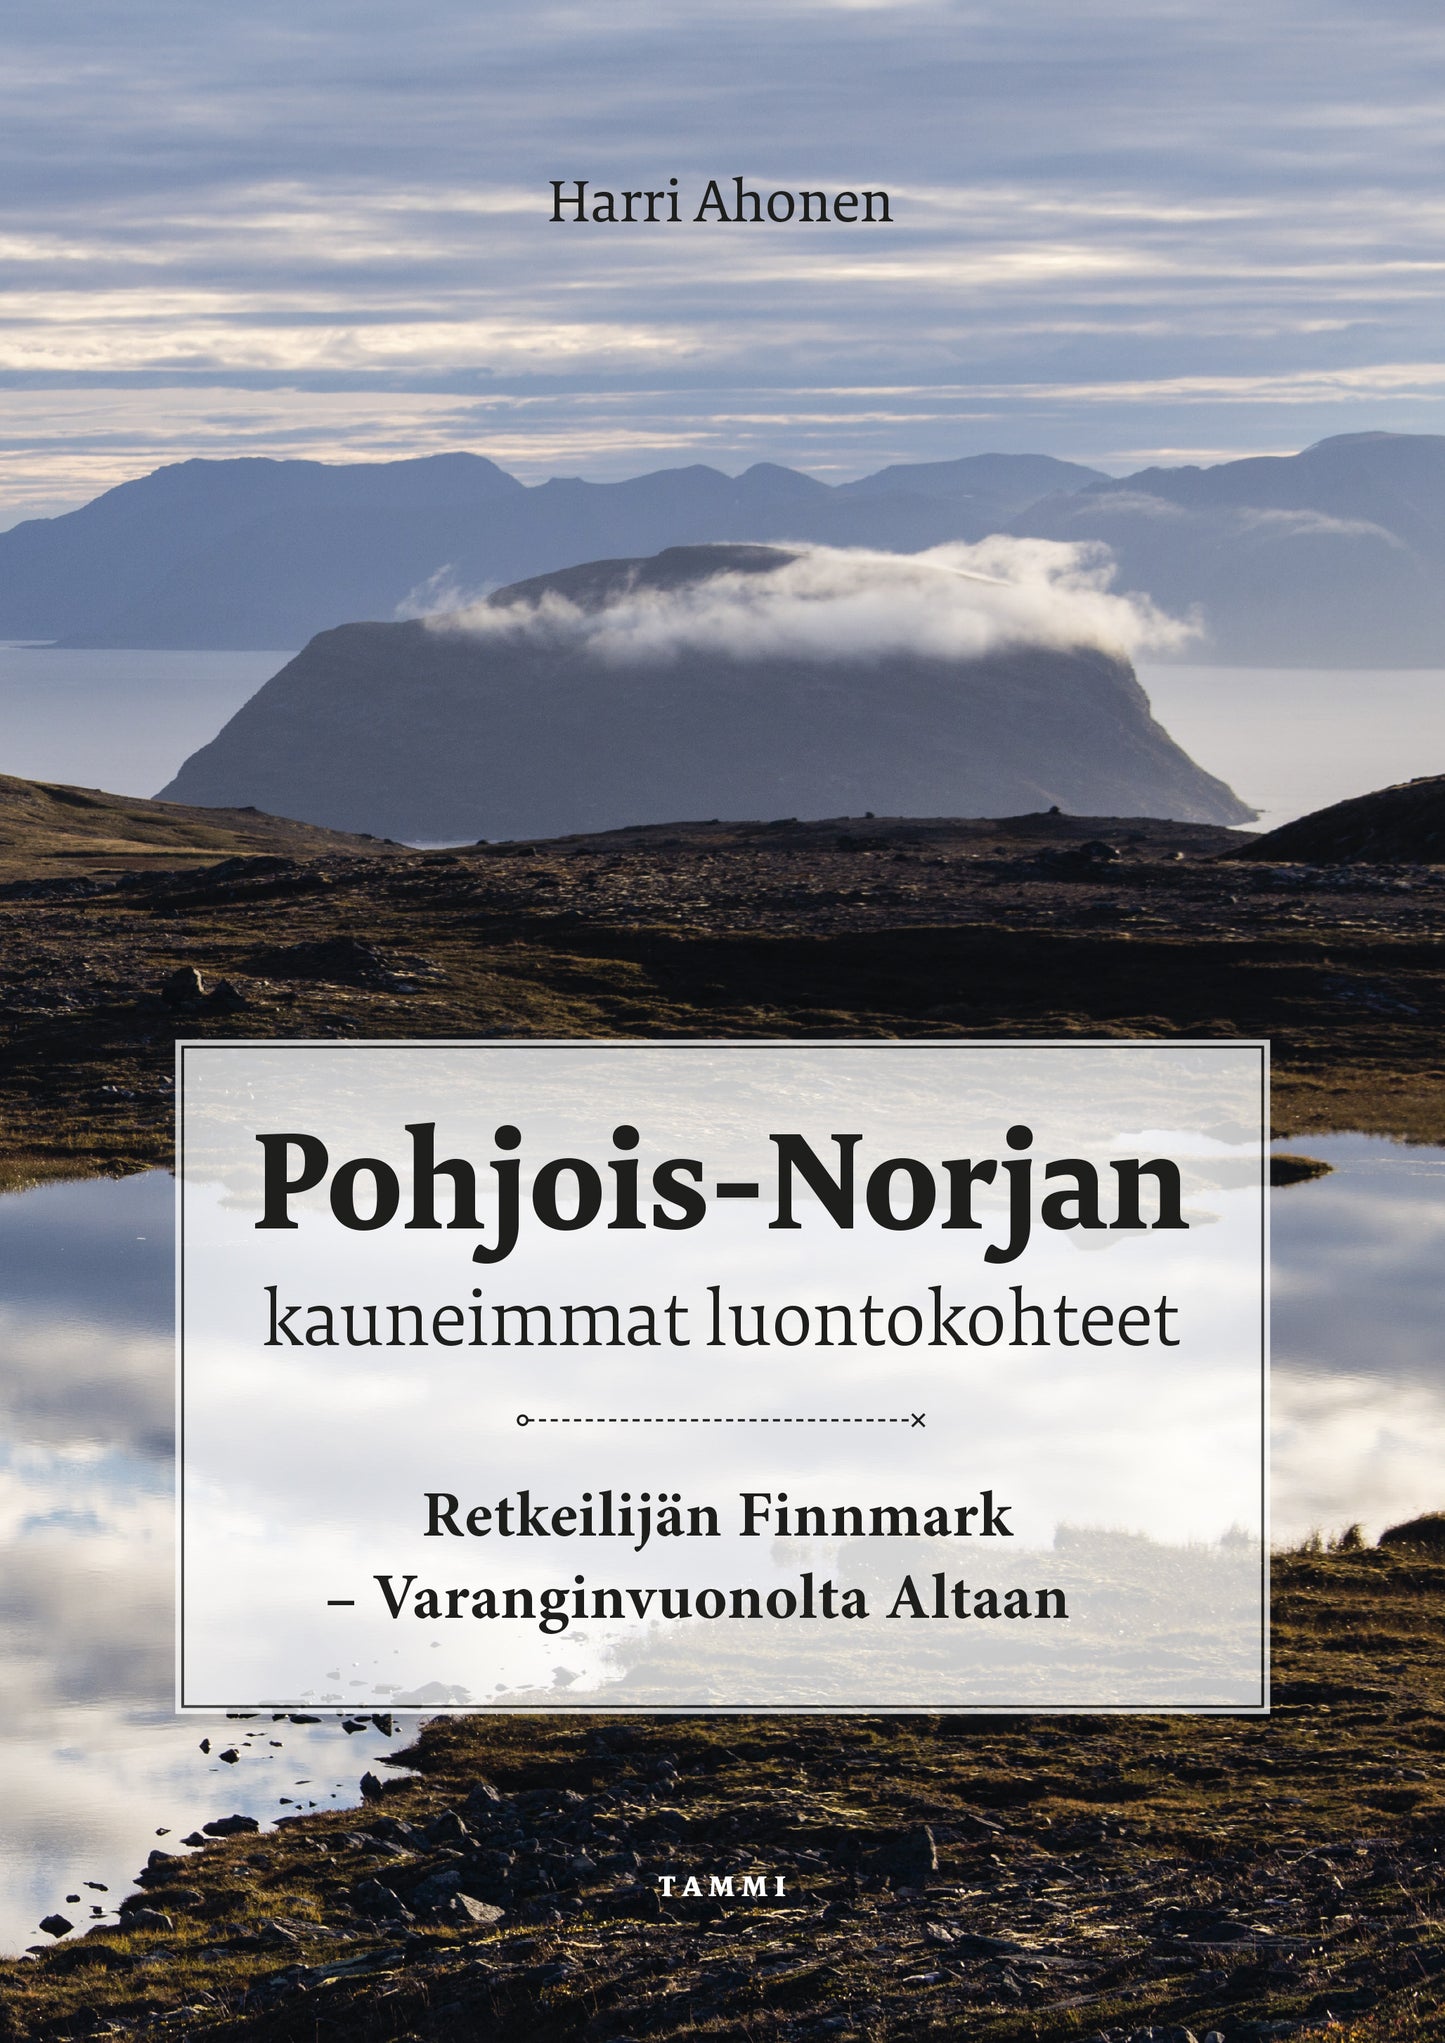 Pohjois-Norjan kauneimmat luontokohteet